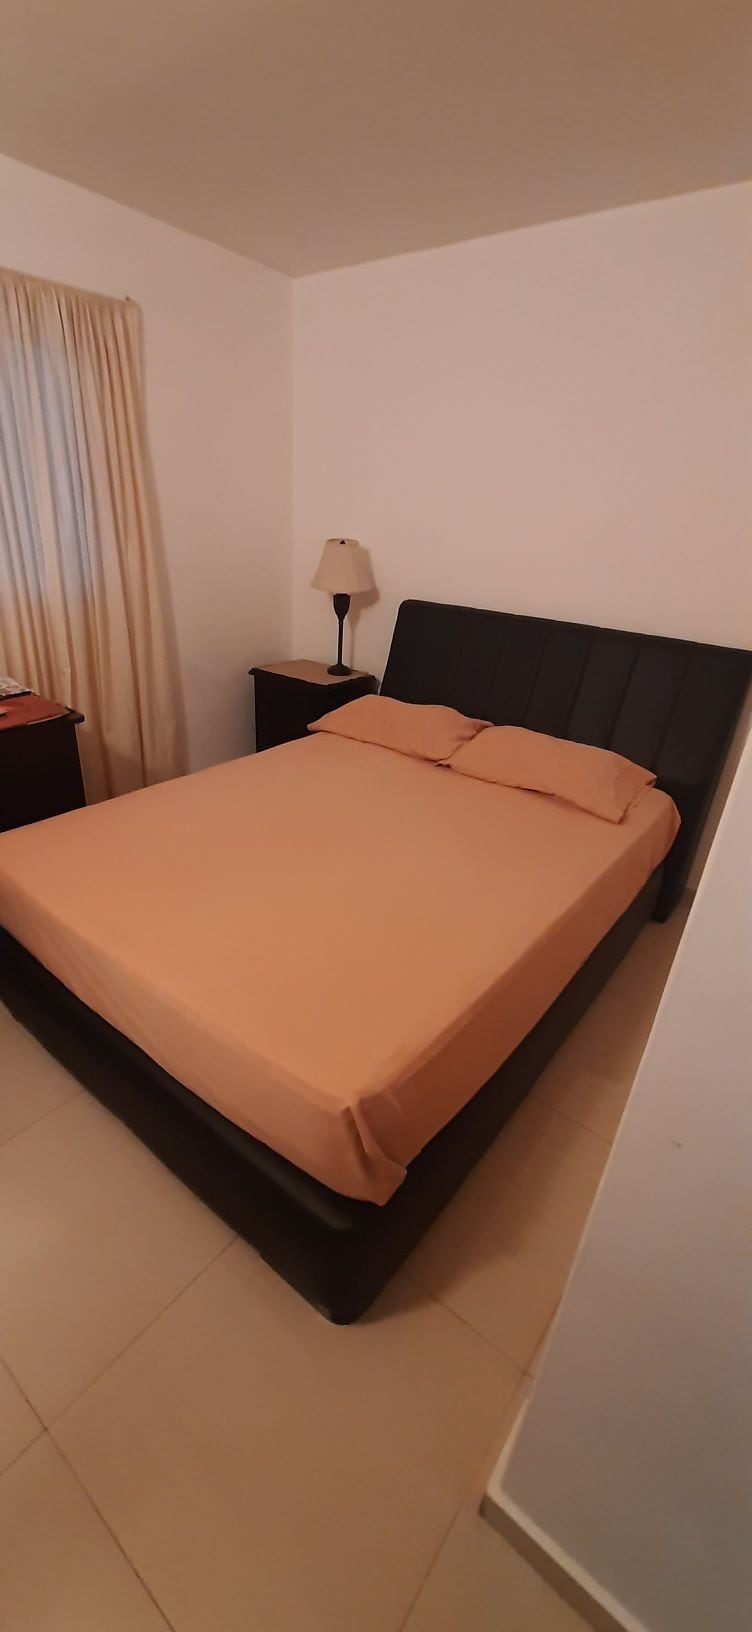 Acogedor y cómodo dormitorio para viajero o pareja